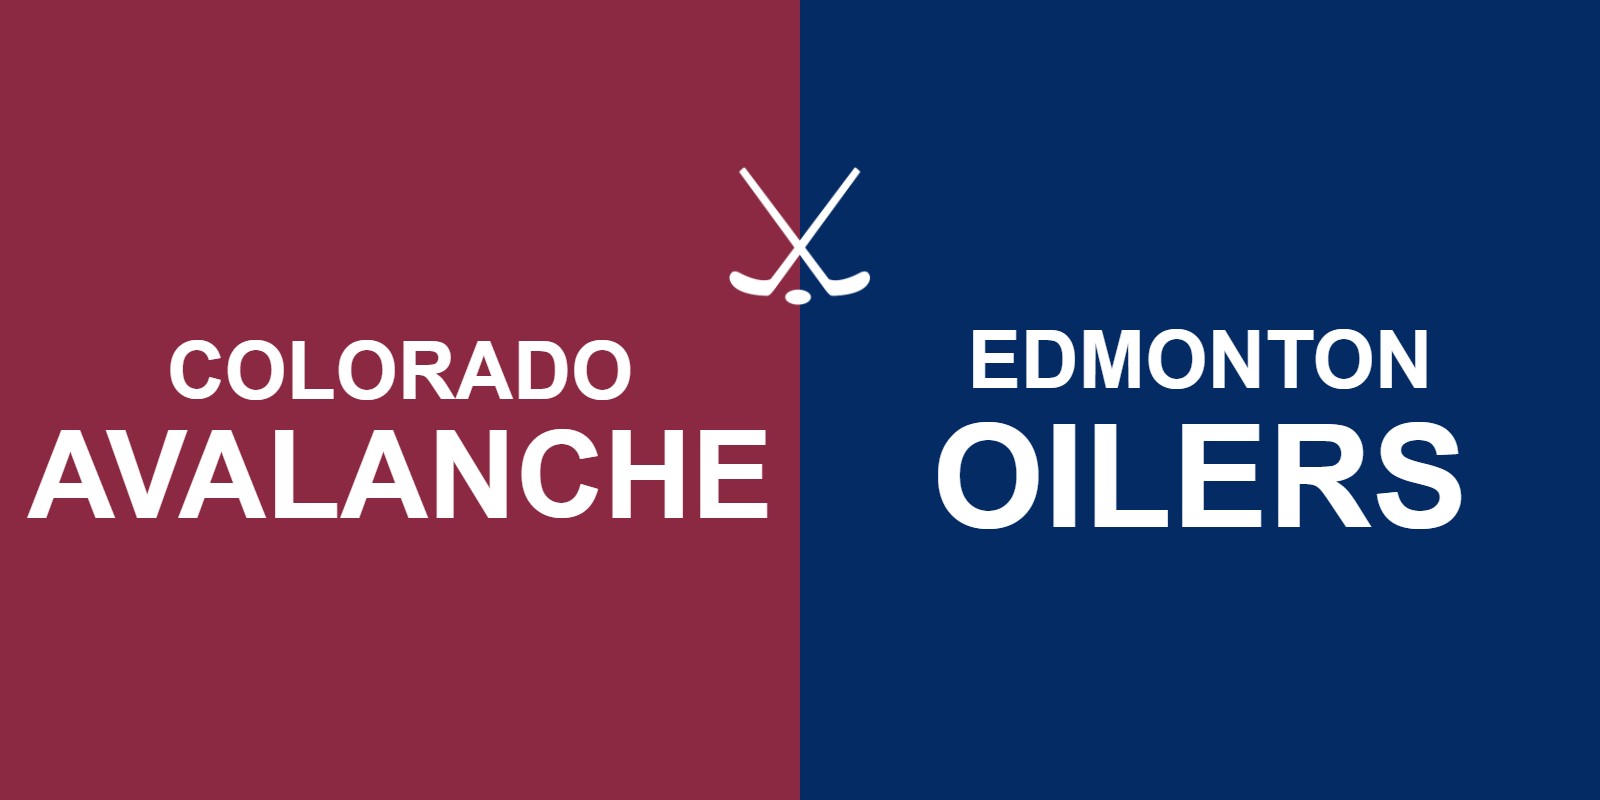 Avalanche vs Oilers